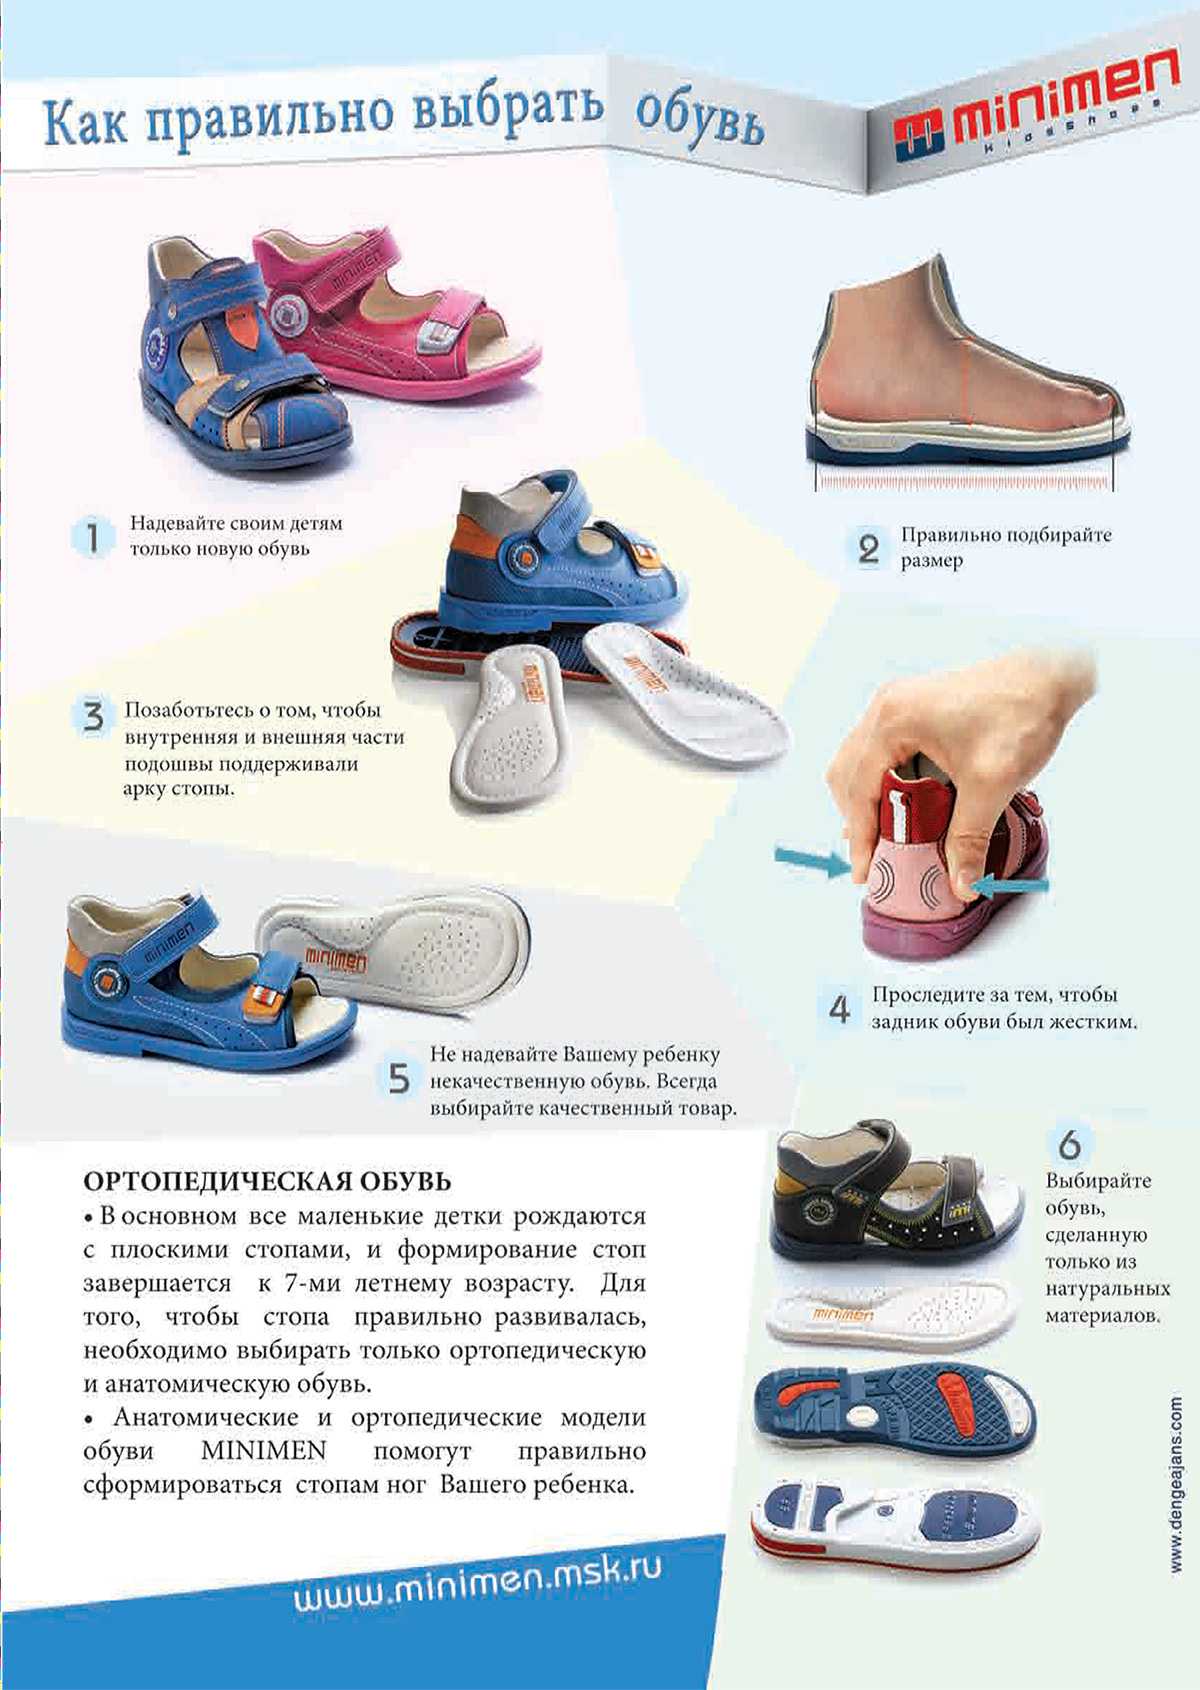 Как правильно подобрать обувь ребенку